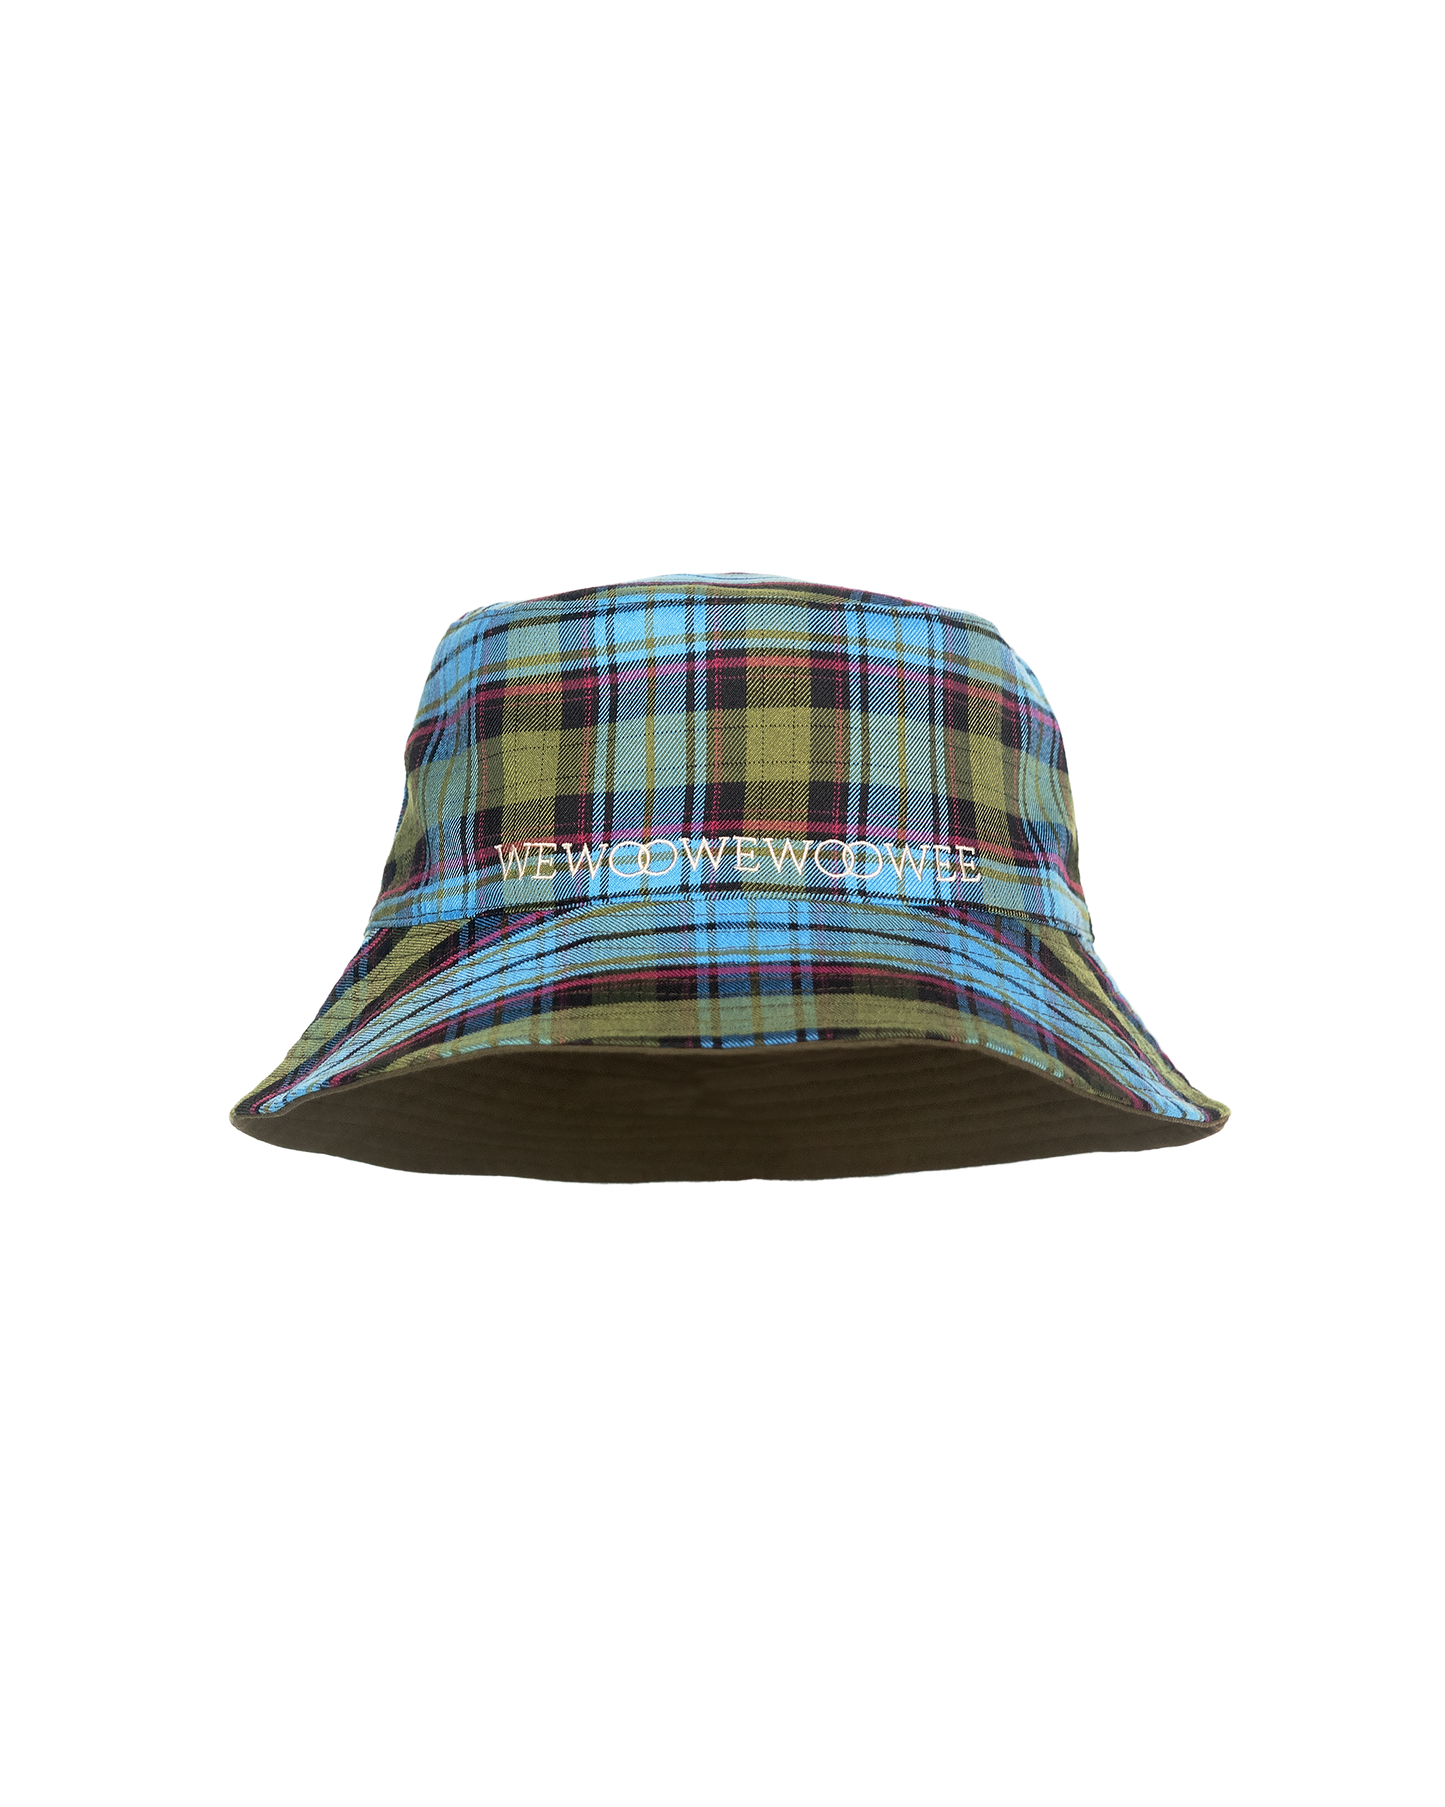 2-Sided Bucket Hat - Blue Olive Joyful Checkered